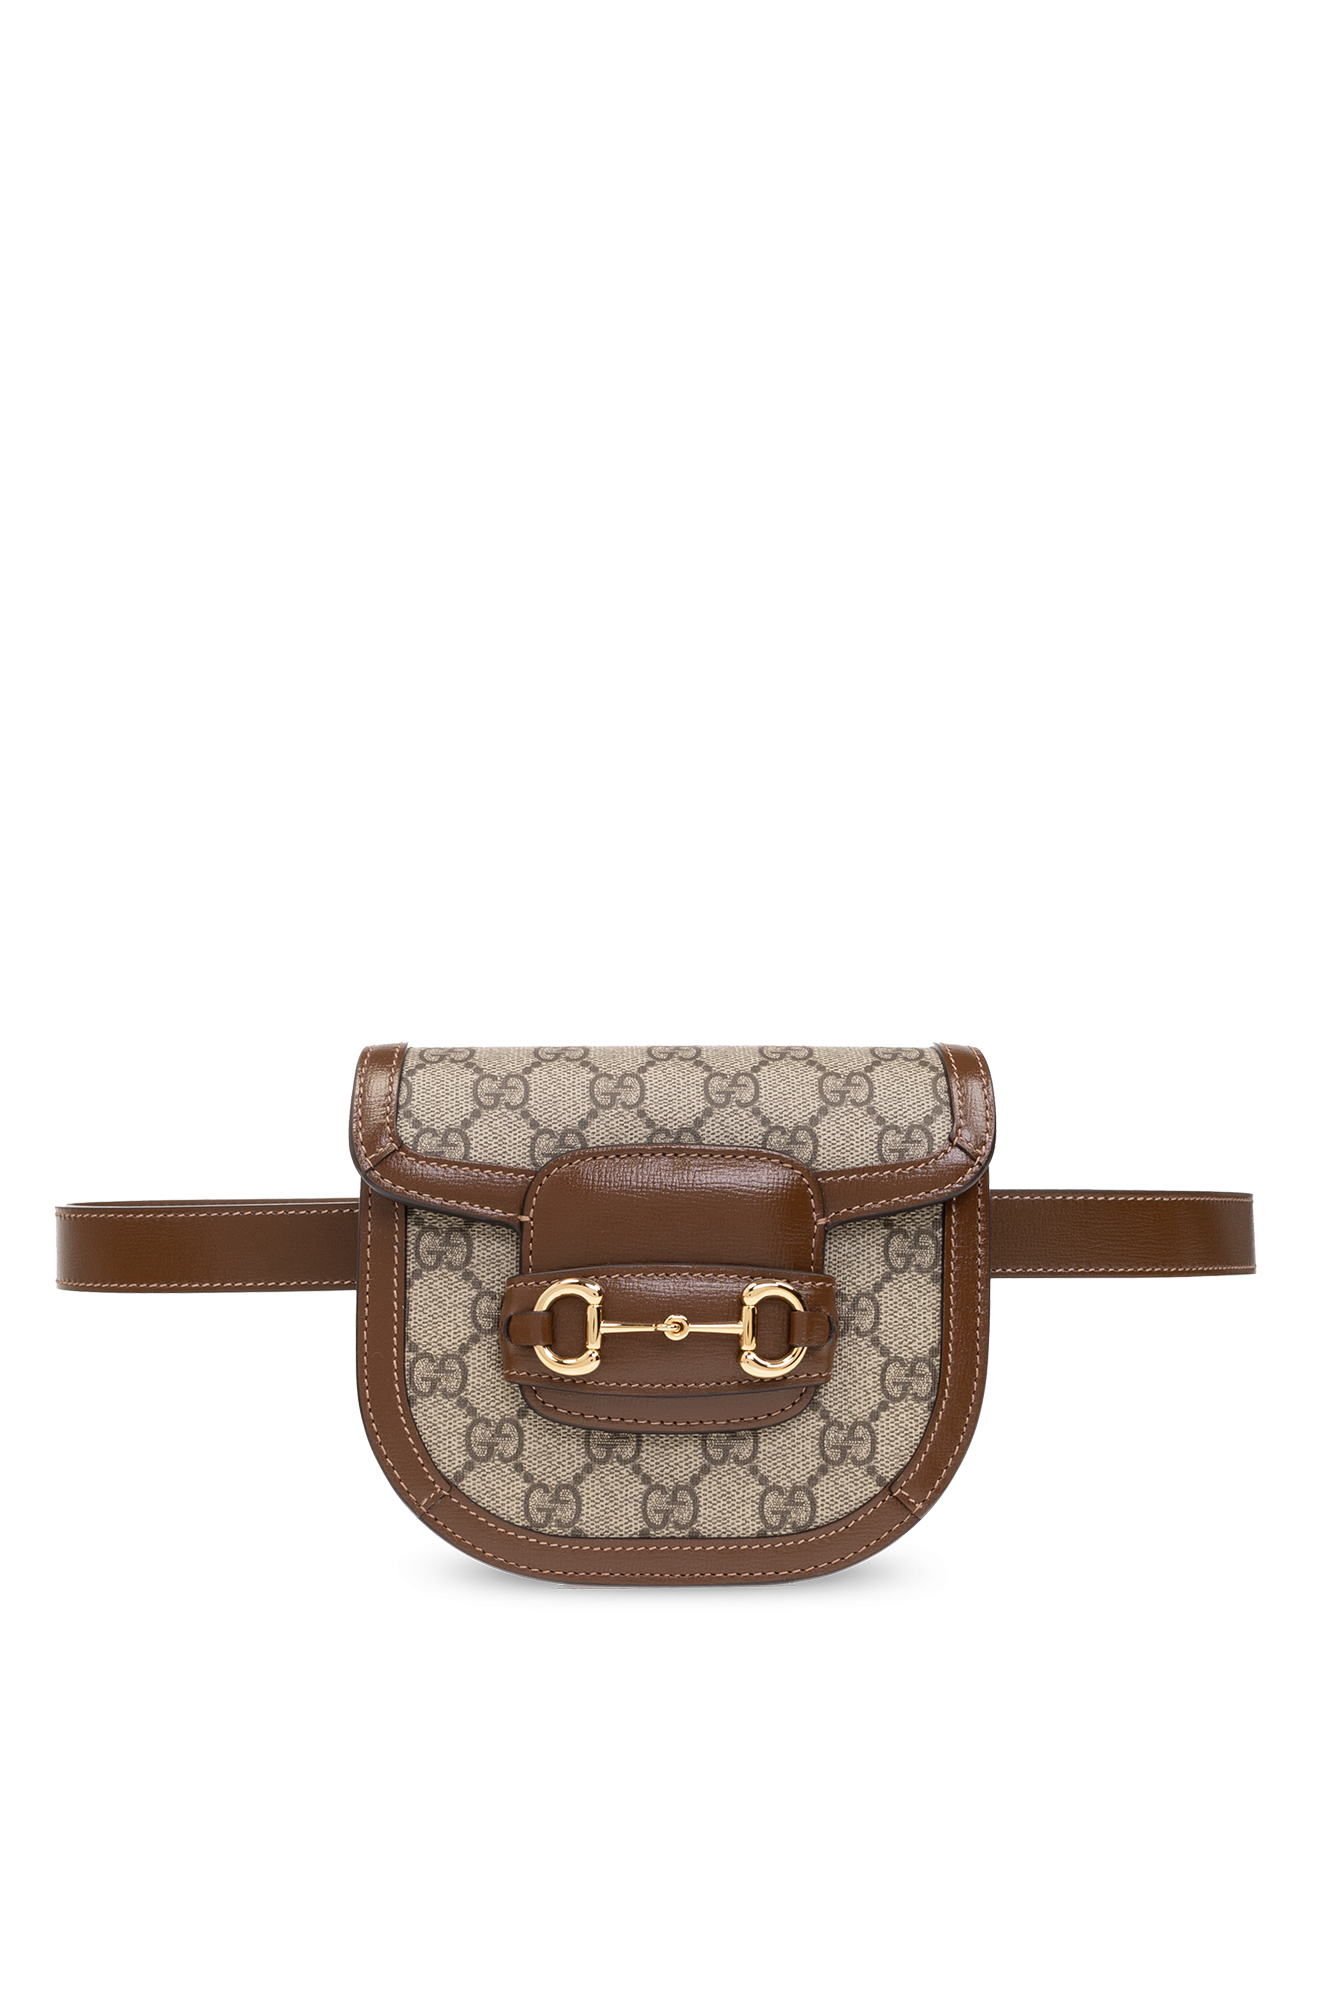 Gucci ‘1955 Horsebit’ belt bag